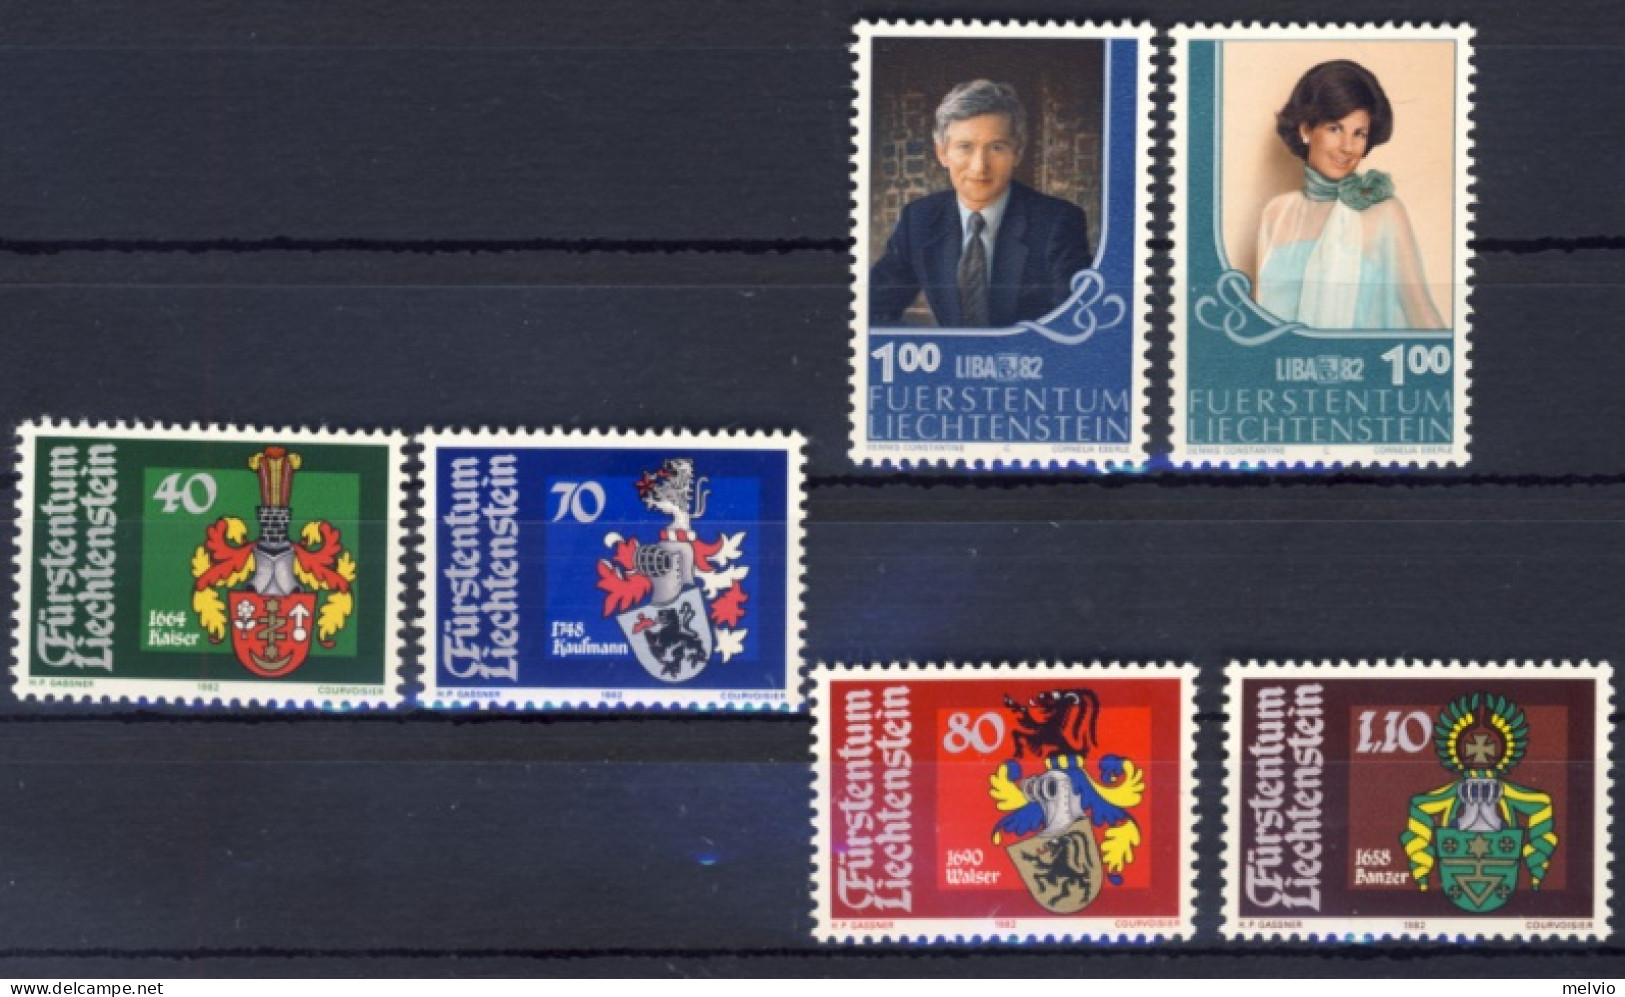 1982-Liechtenstein (MNH=**) 2 Serie 6 Valori Stemmi Landammanni, Mostra Filateli - Unused Stamps